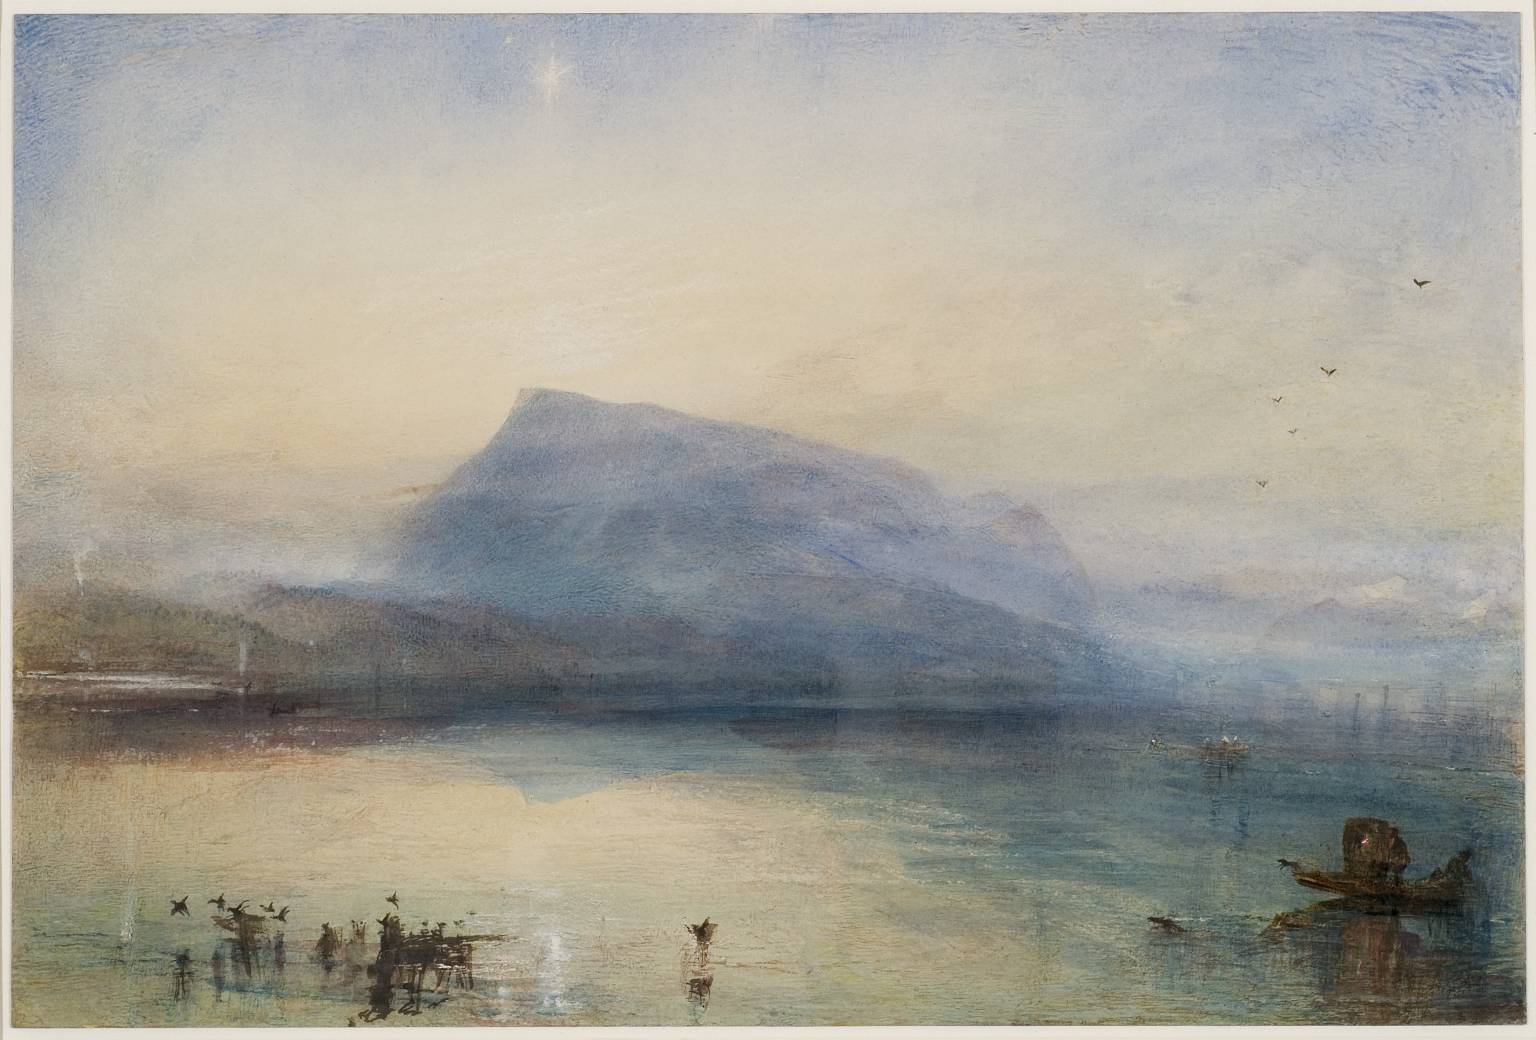 Albastru de Rigi by Joseph Mallord William Turner - 1842 